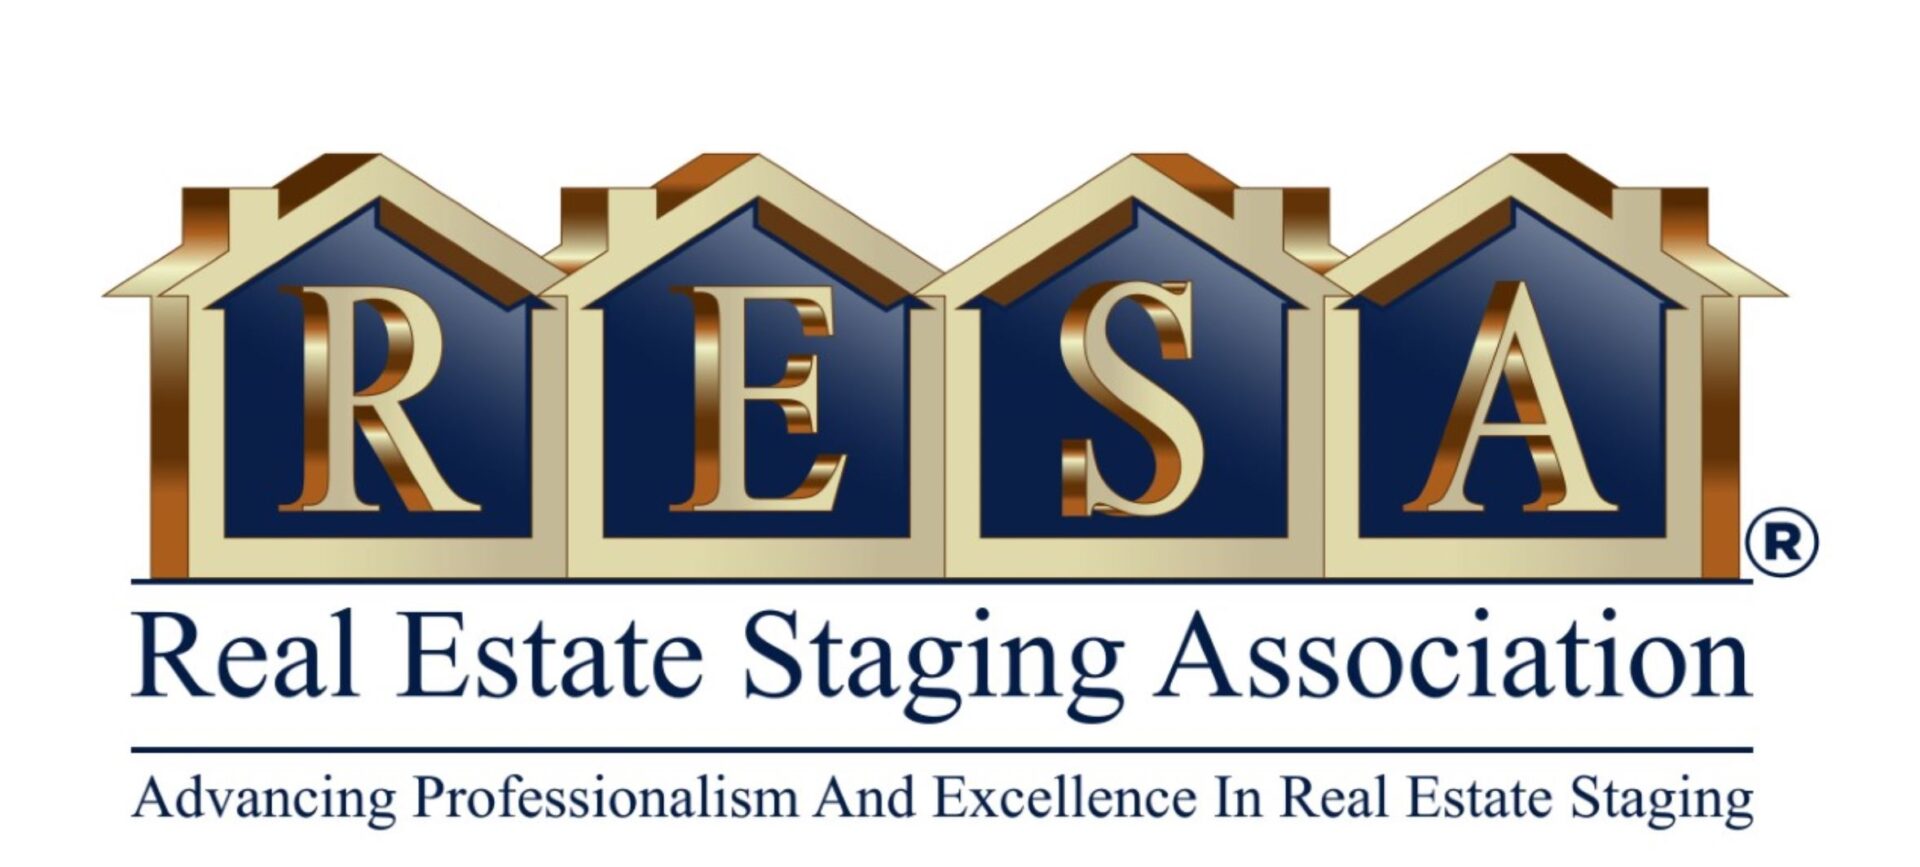 Resa real estate staging association logo.